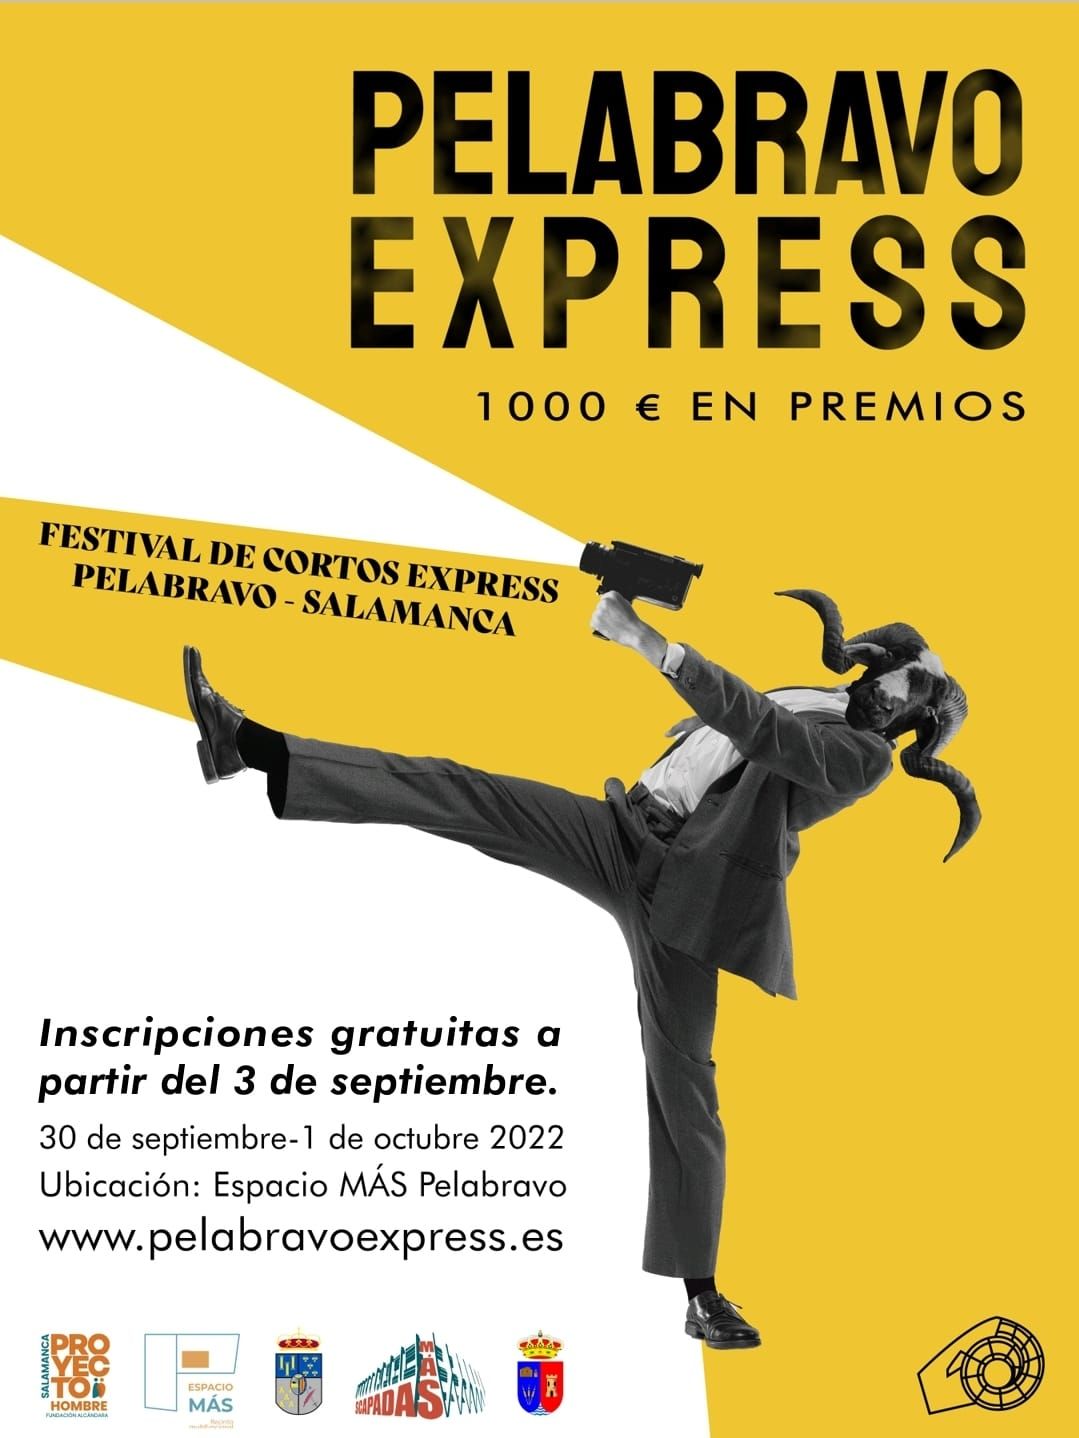 Festival de cortos PelabravoExpress